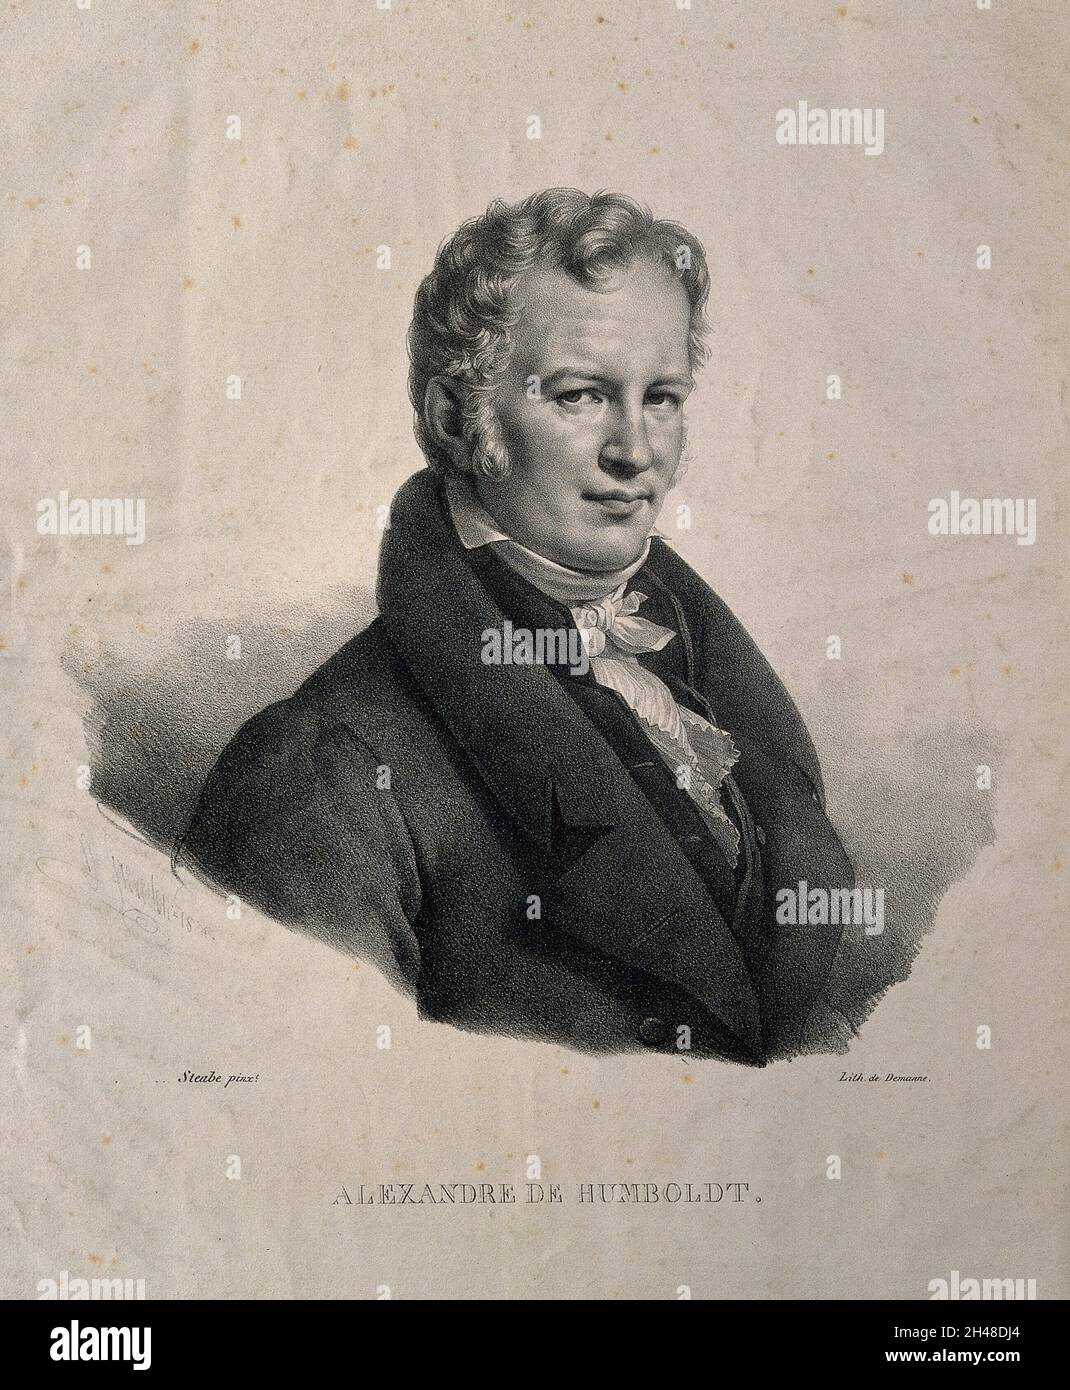 Friedrich Heinrich Alexander von Humboldt. Lithograph, 1824, after Baron C. von Steuben, 1815. Stock Photo